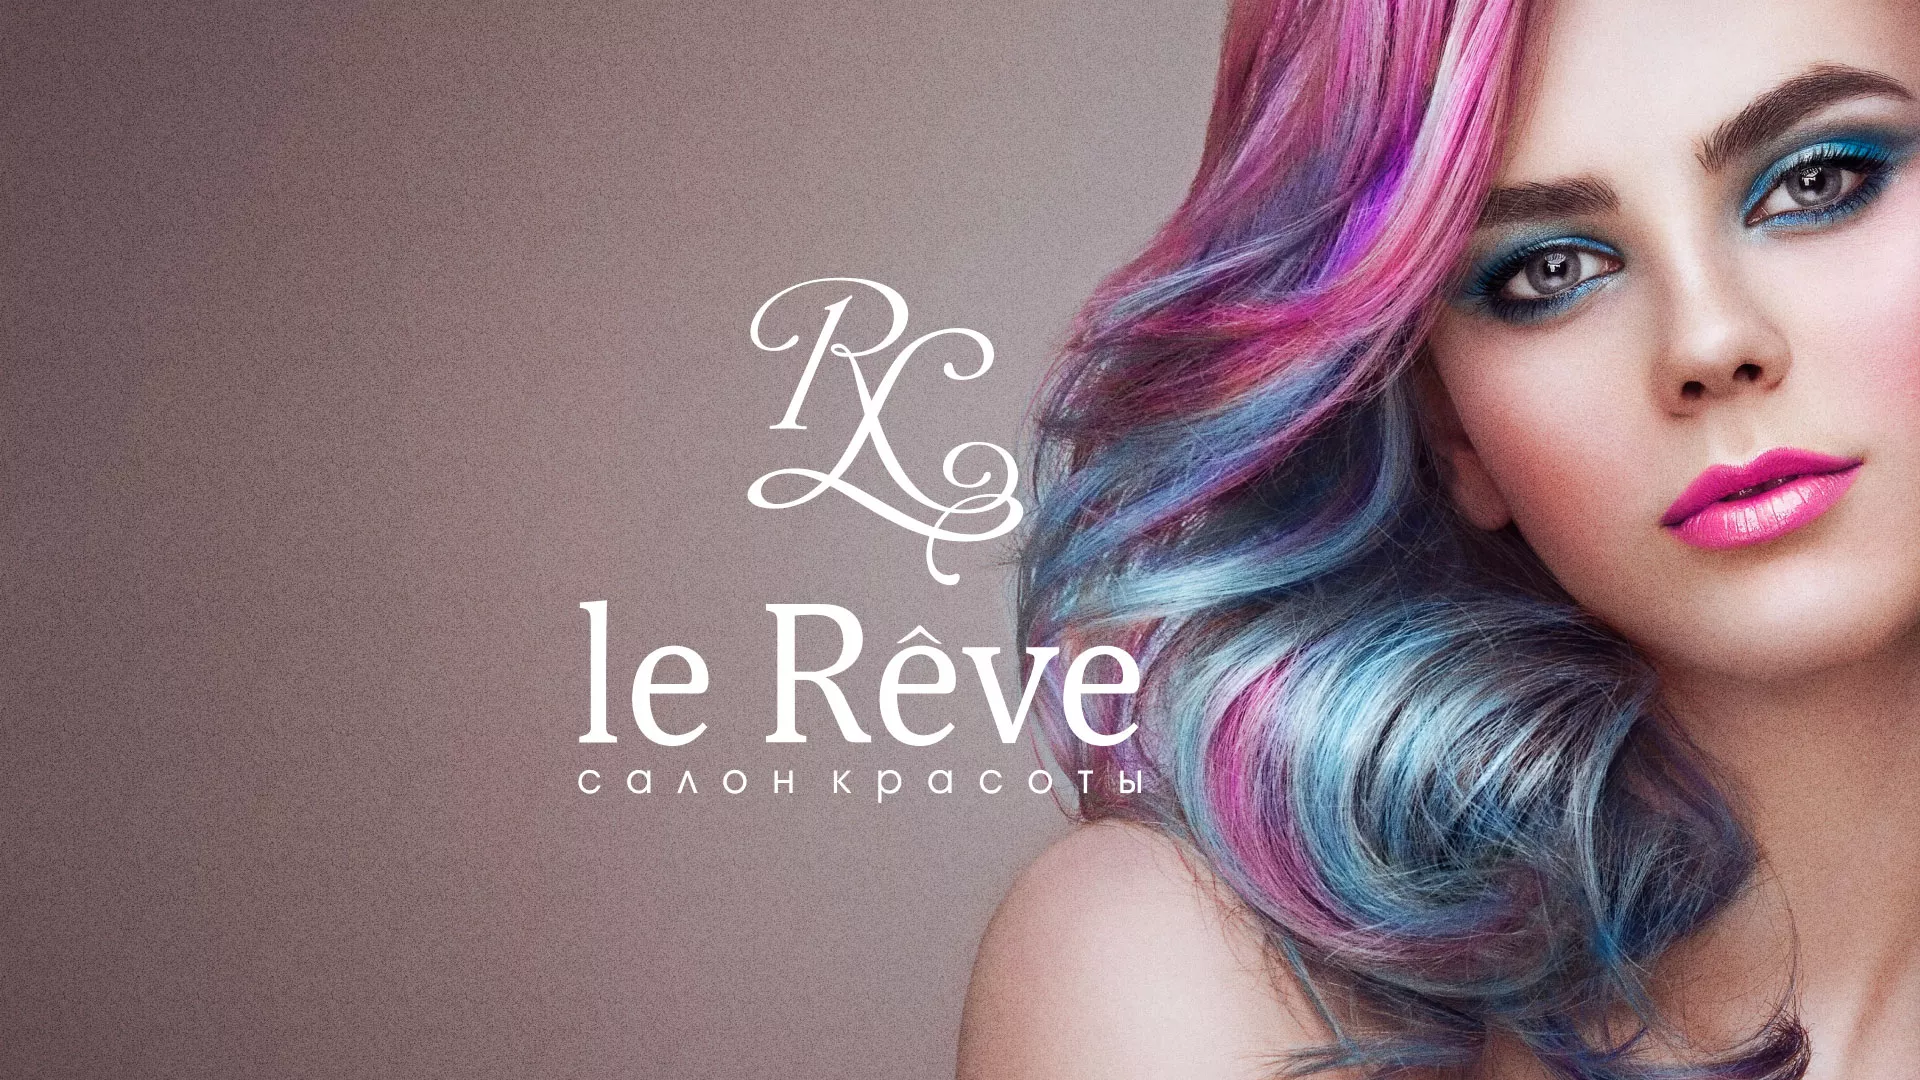 Создание сайта для салона красоты «Le Reve» в Шарье